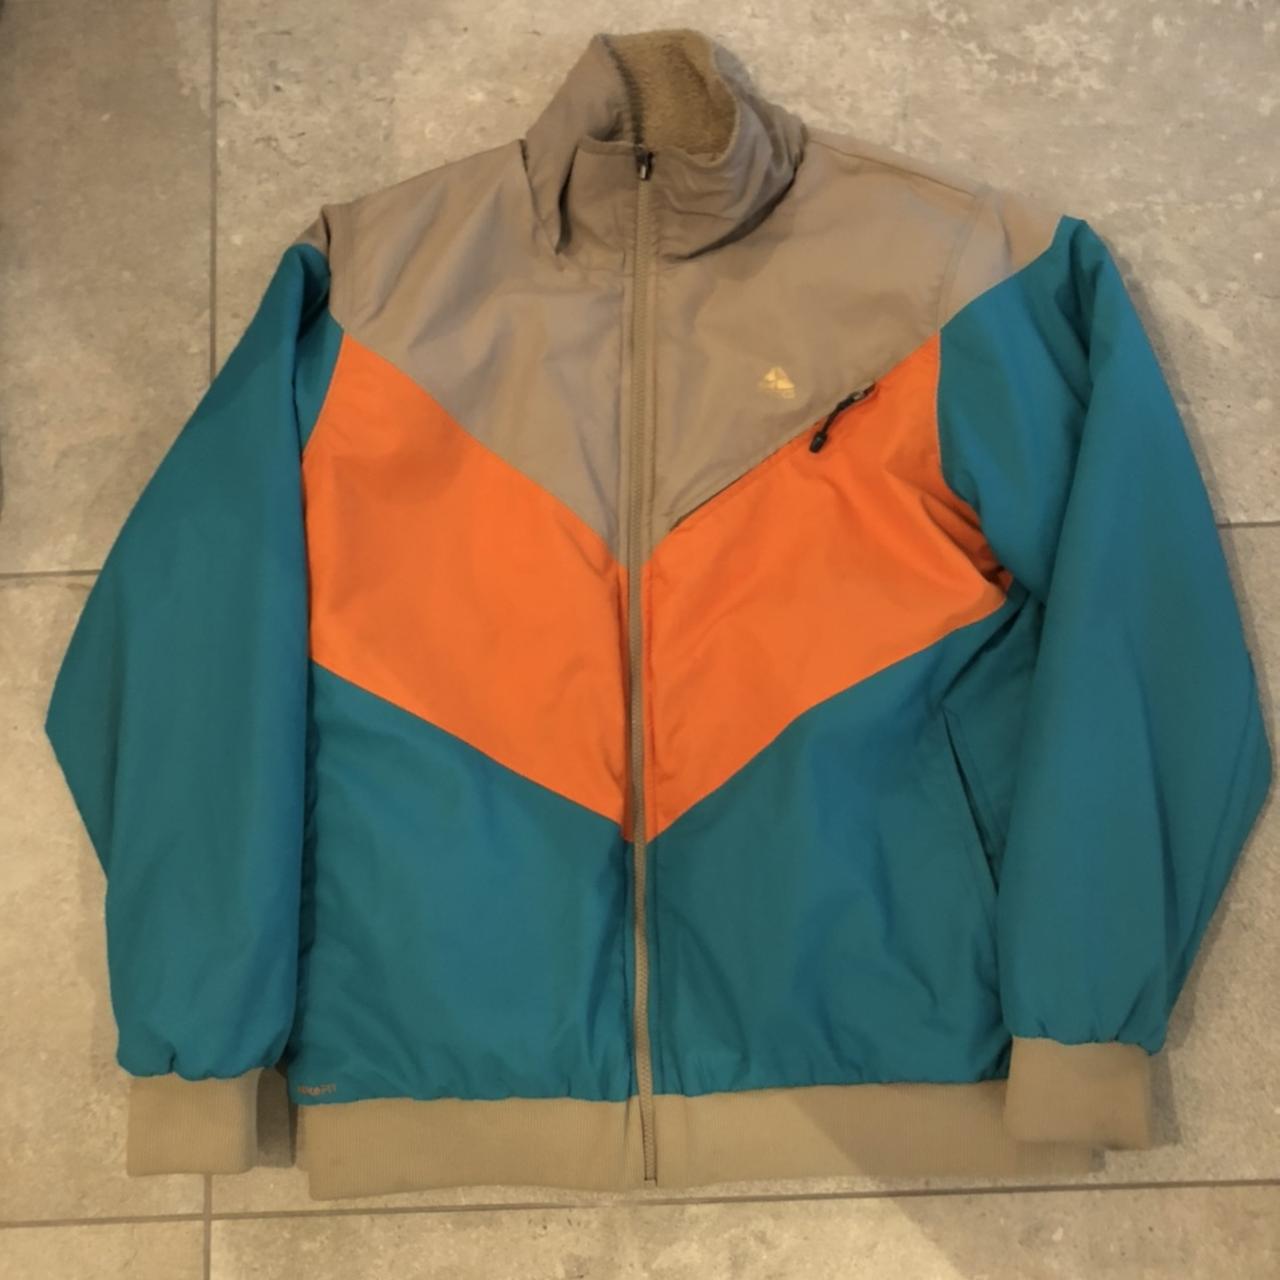 Rare Nike ACG reversible Sherpa jacket in mint... - Depop